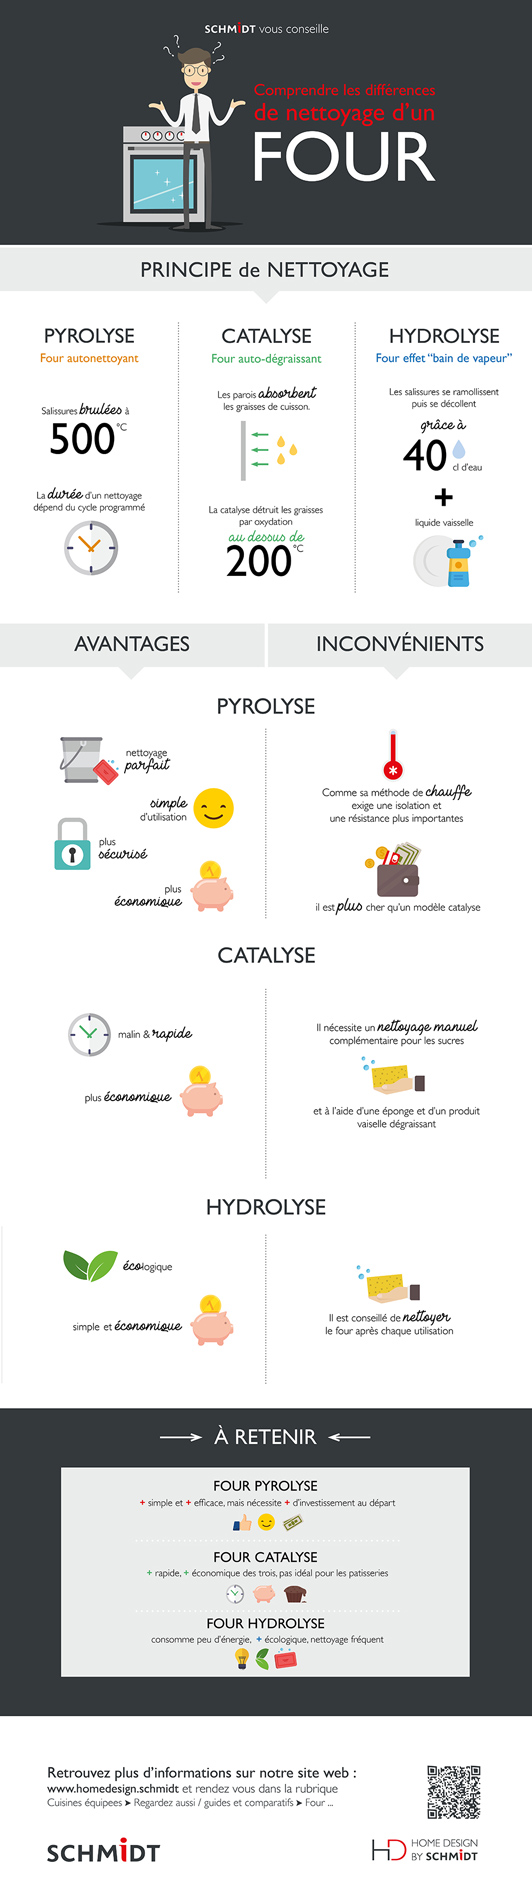 Infografie sur les différences entre les principes de nettoyage d’un four : pyrolyse, catalyse et hydrolyse.